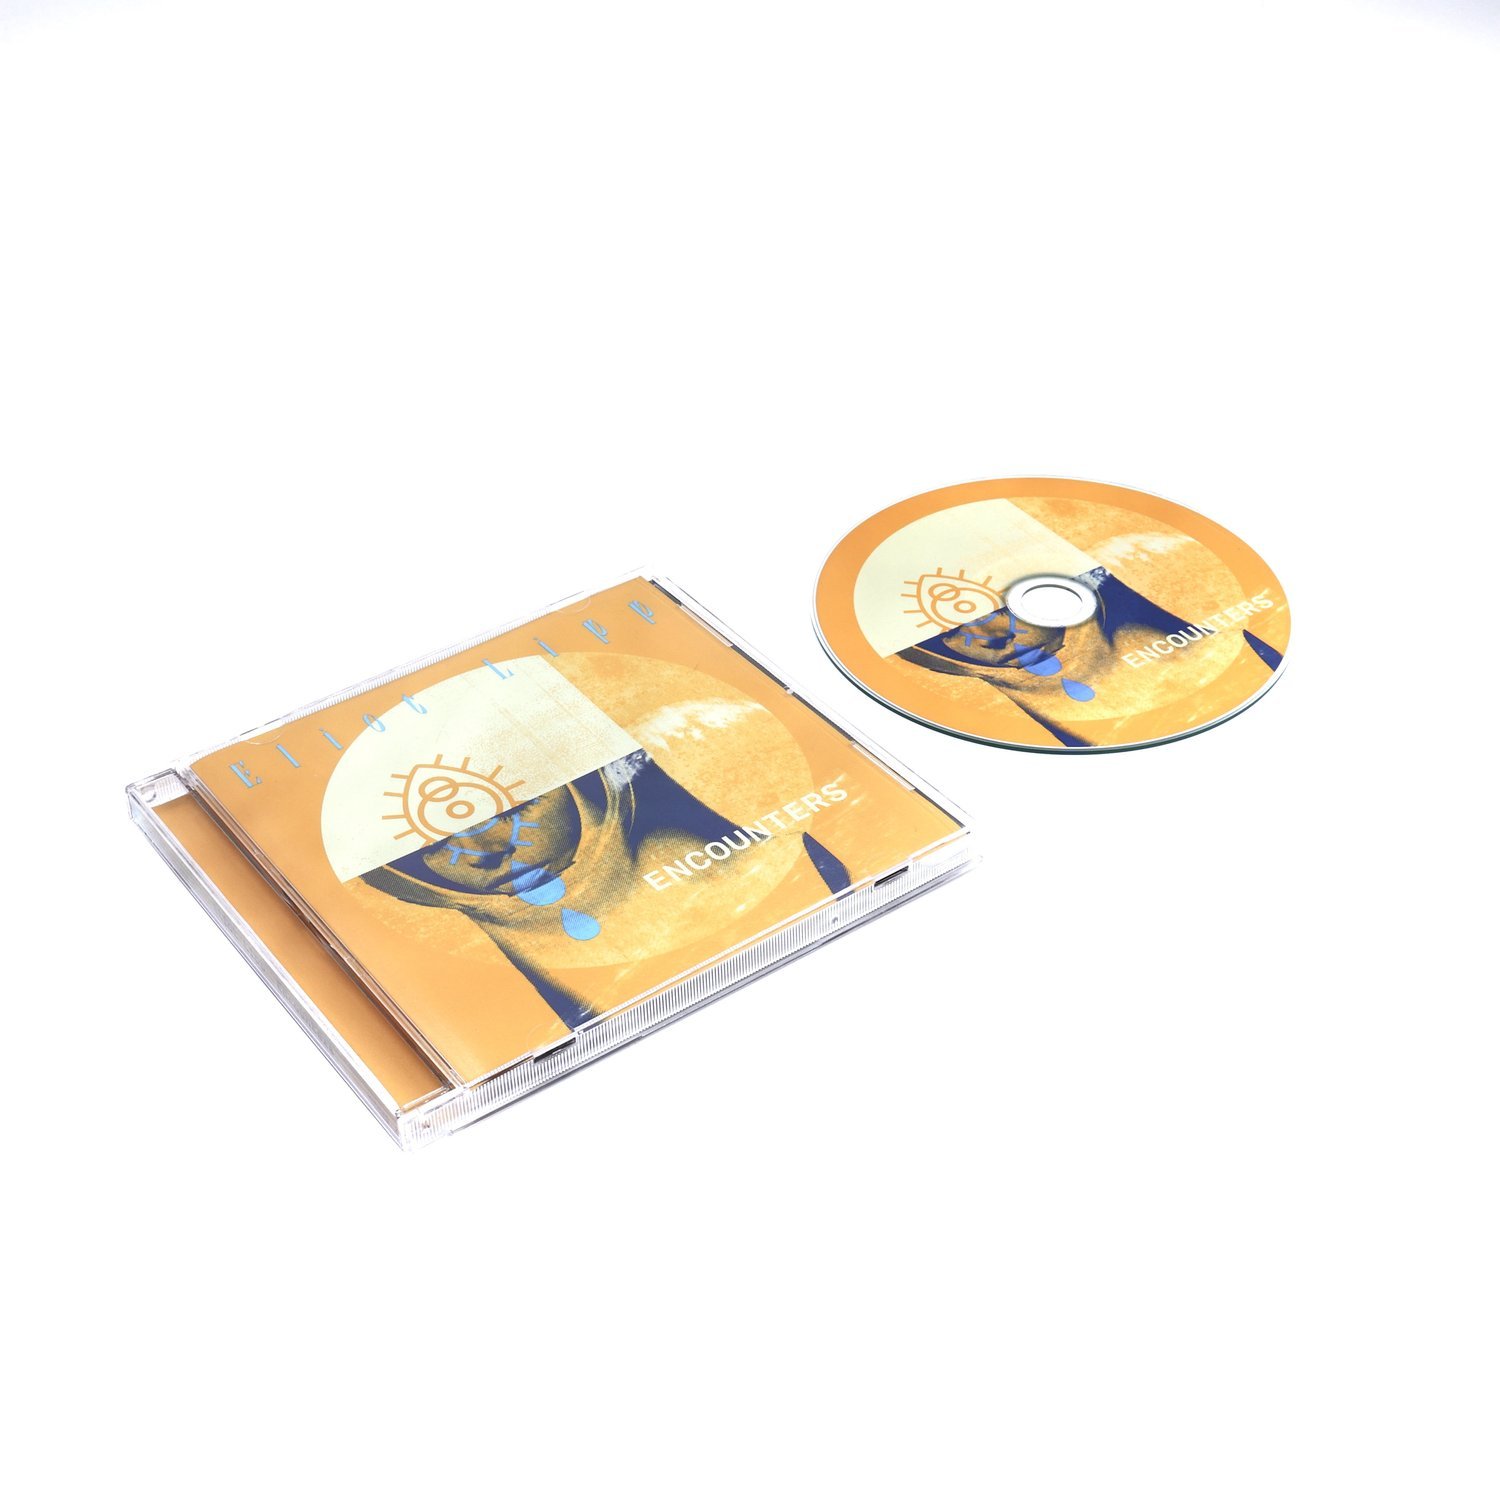 Eliot Lipp - Encounters (CD) – $10.00